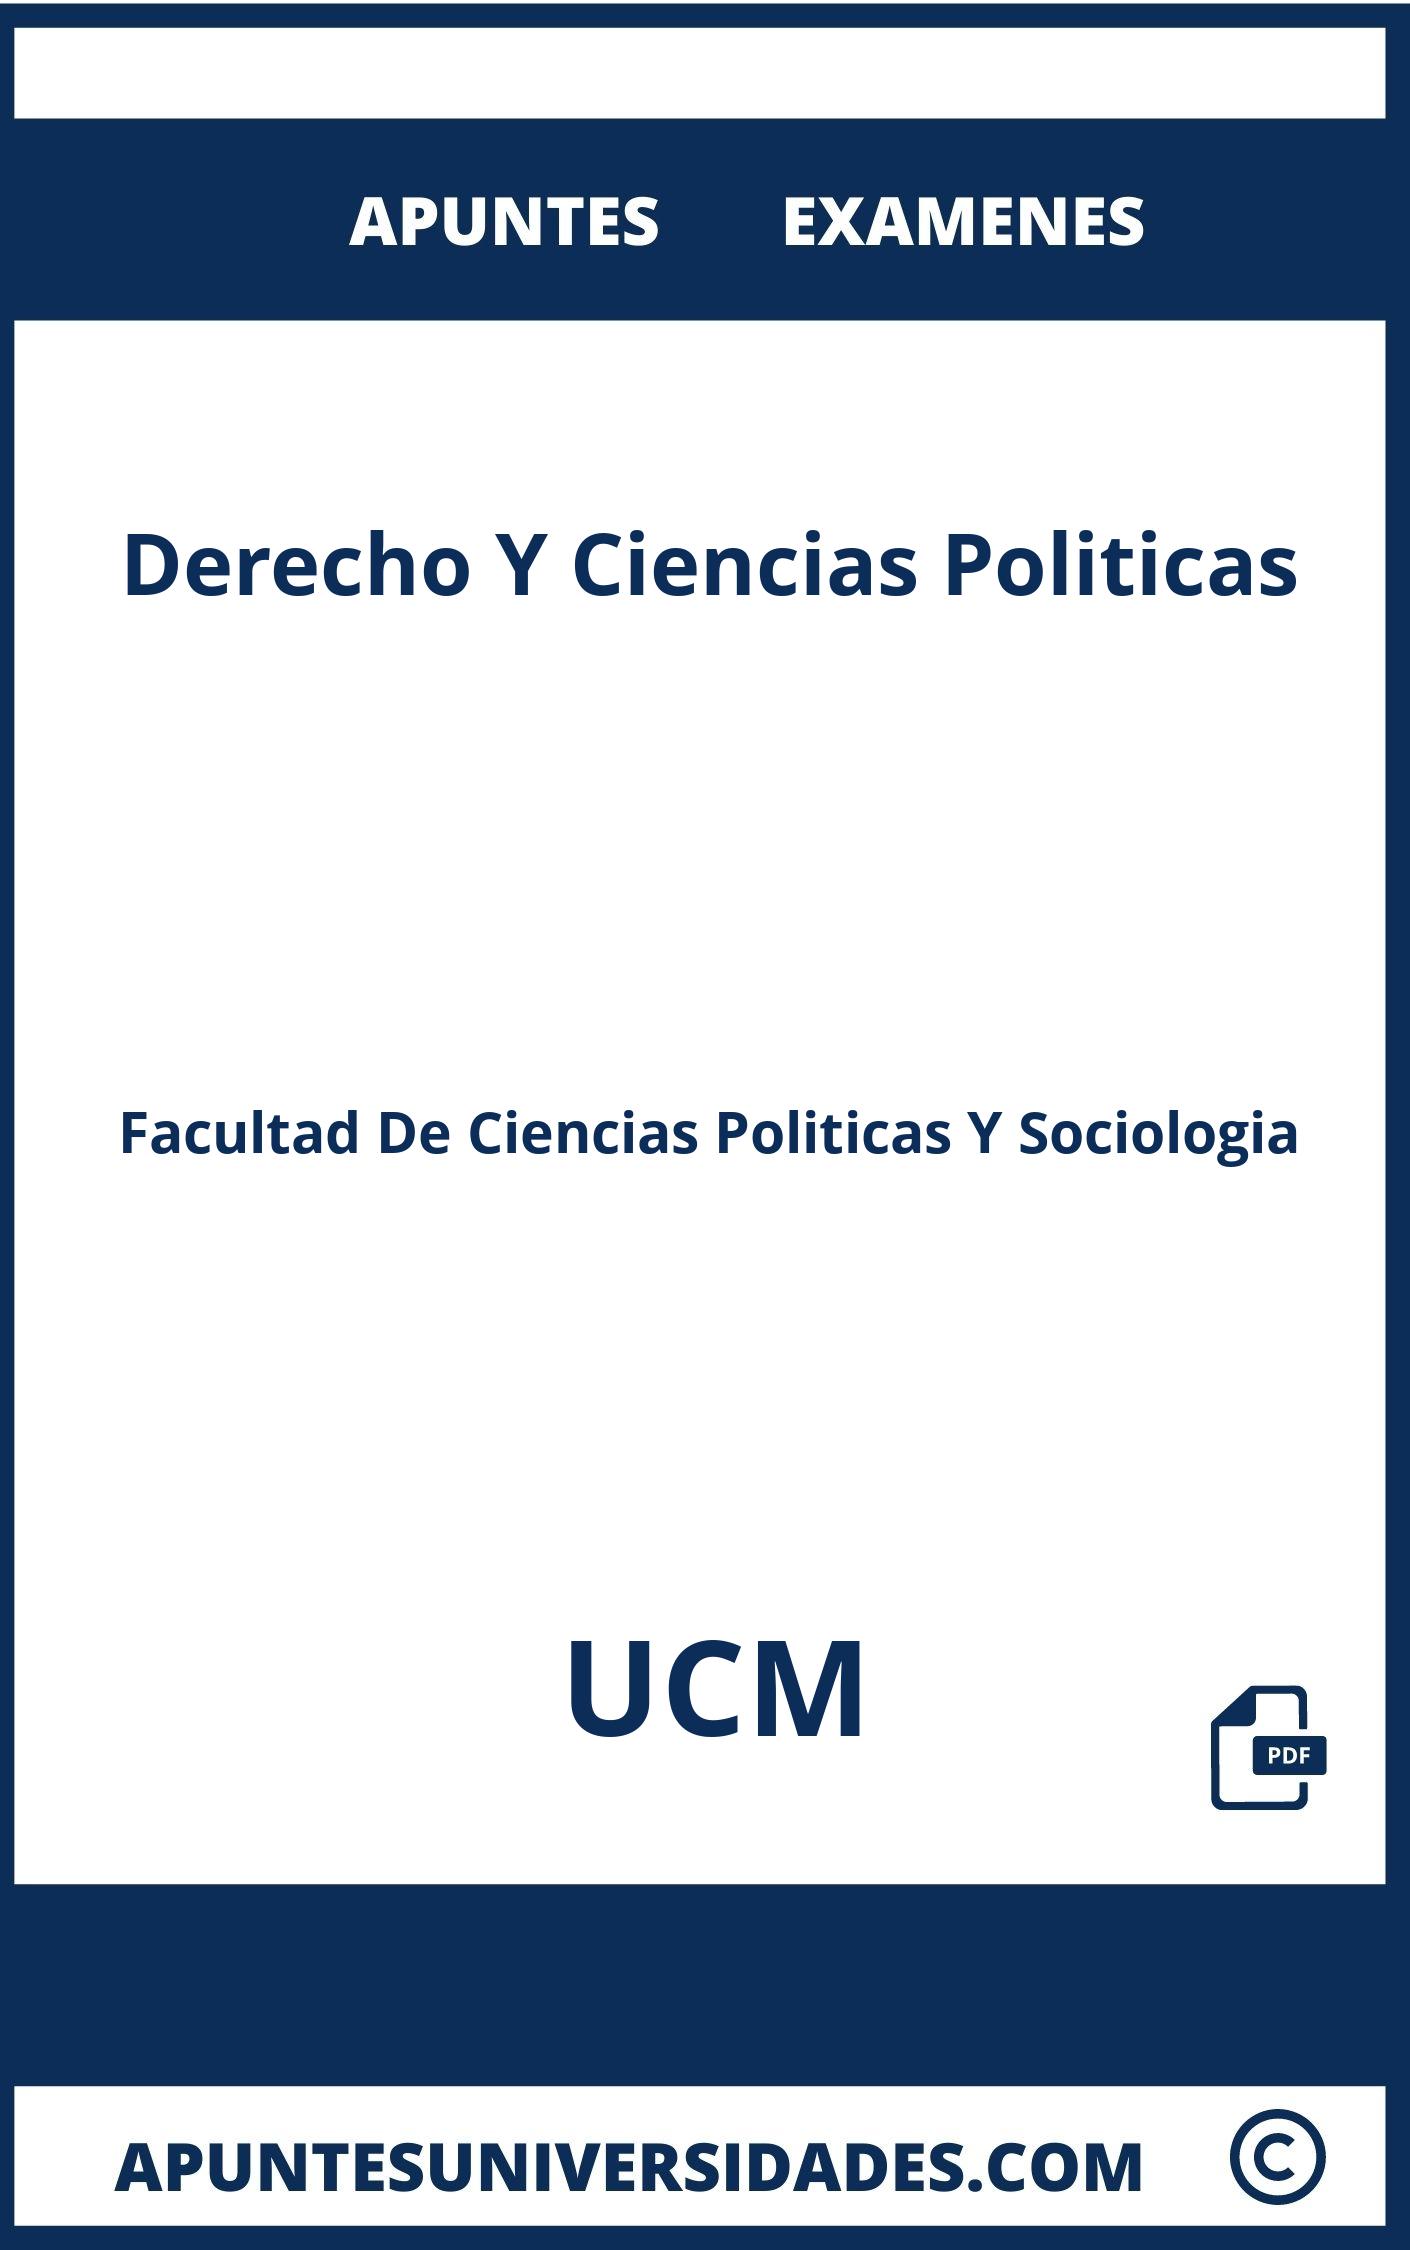 Apuntes y Examenes Derecho Y Ciencias Politicas UCM